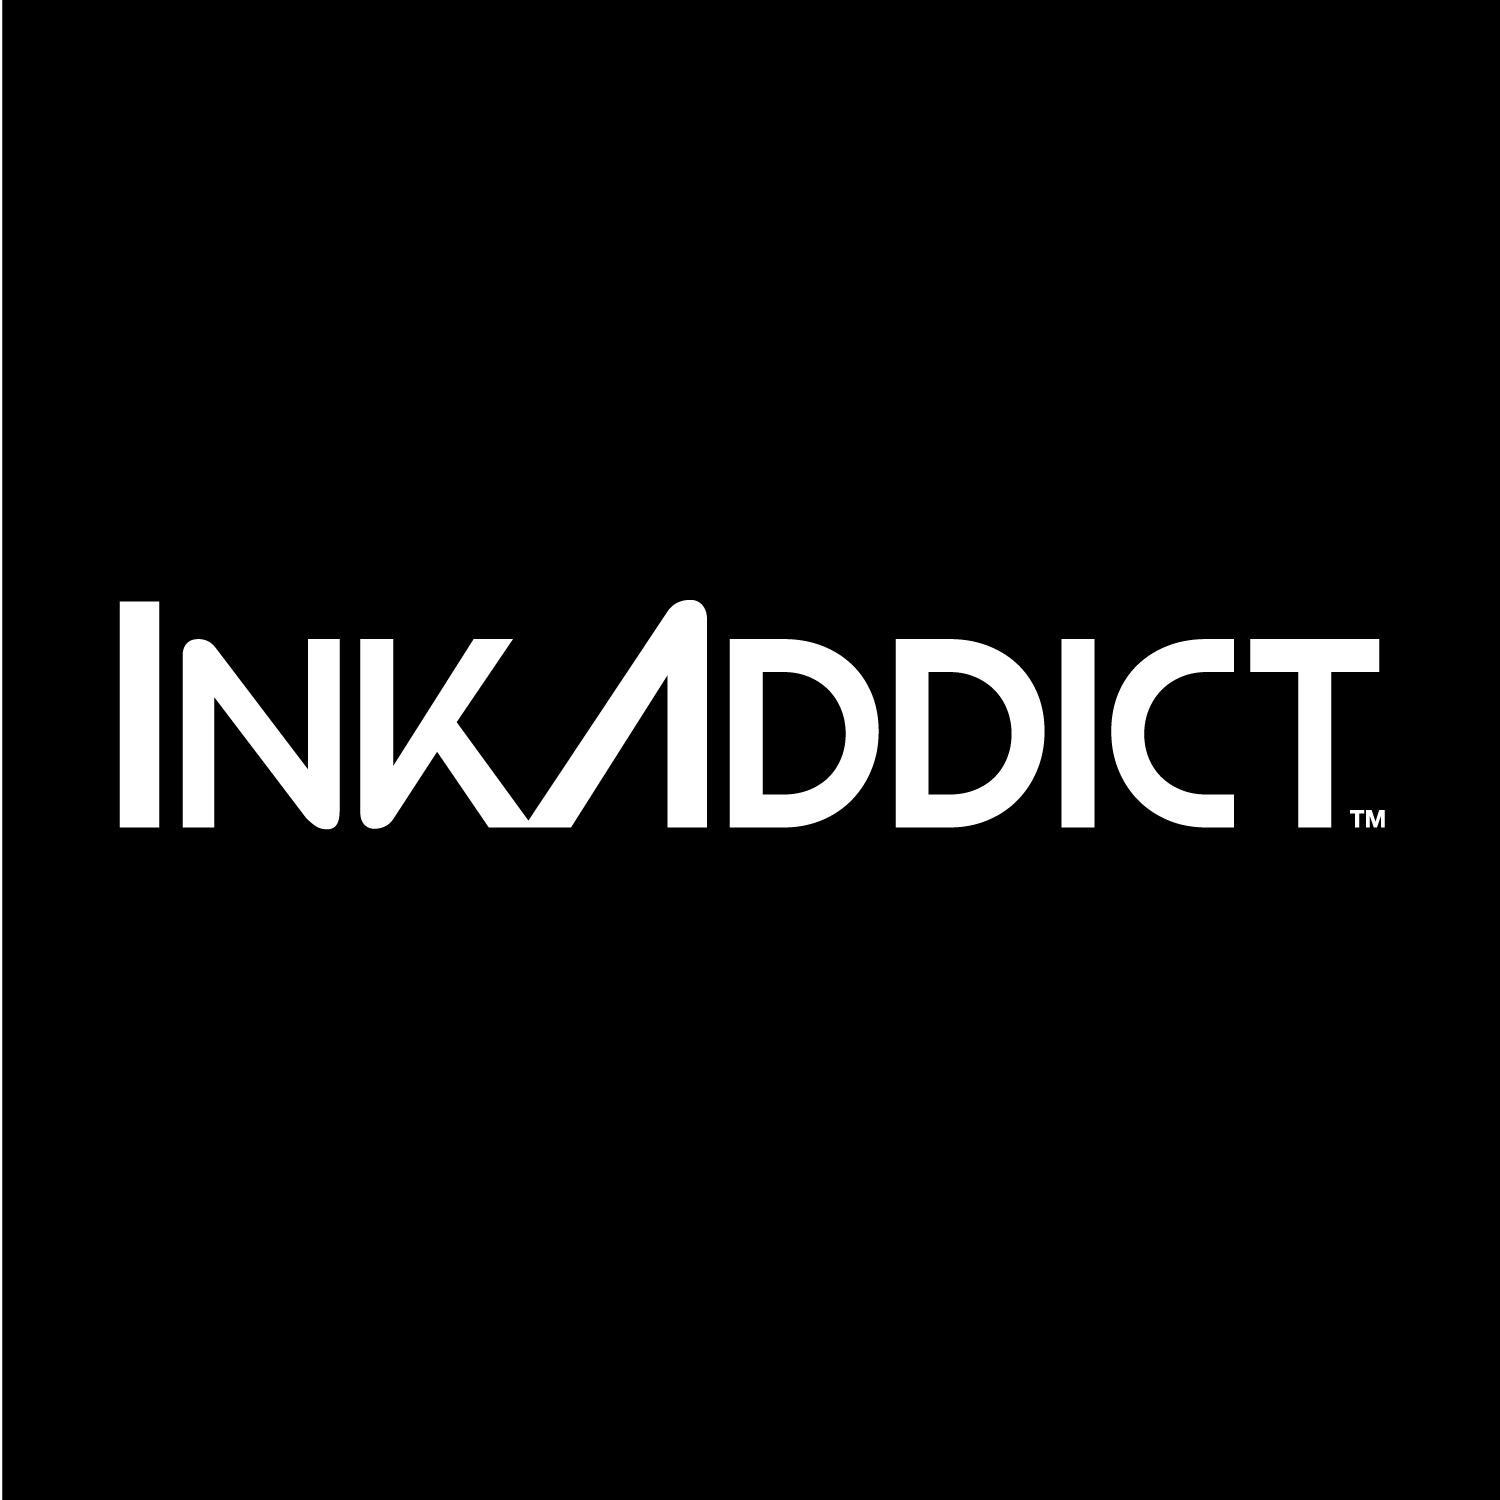 InkAddict